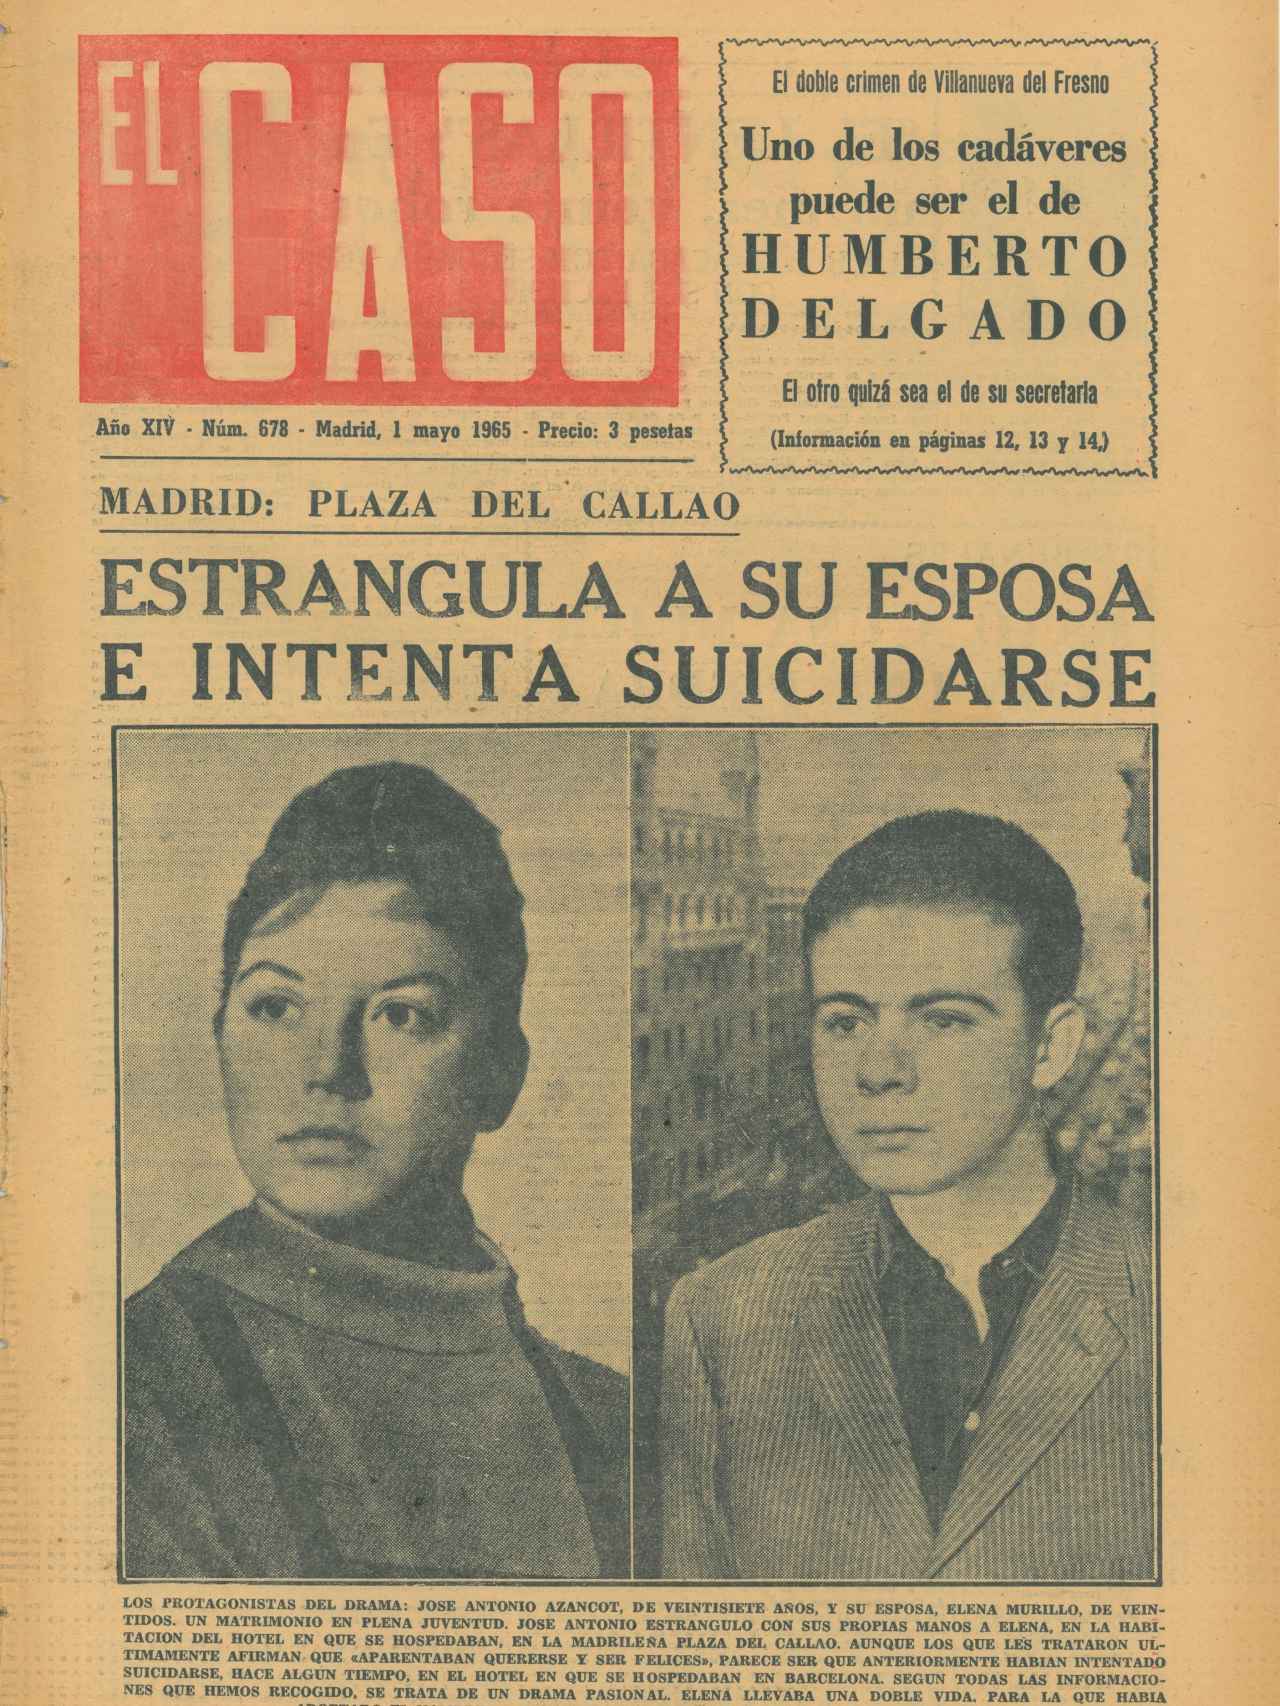 El Caso anunciaba en portada tres páginas de información sobre el suceso. La censura las rebajó a menos de dos folios.